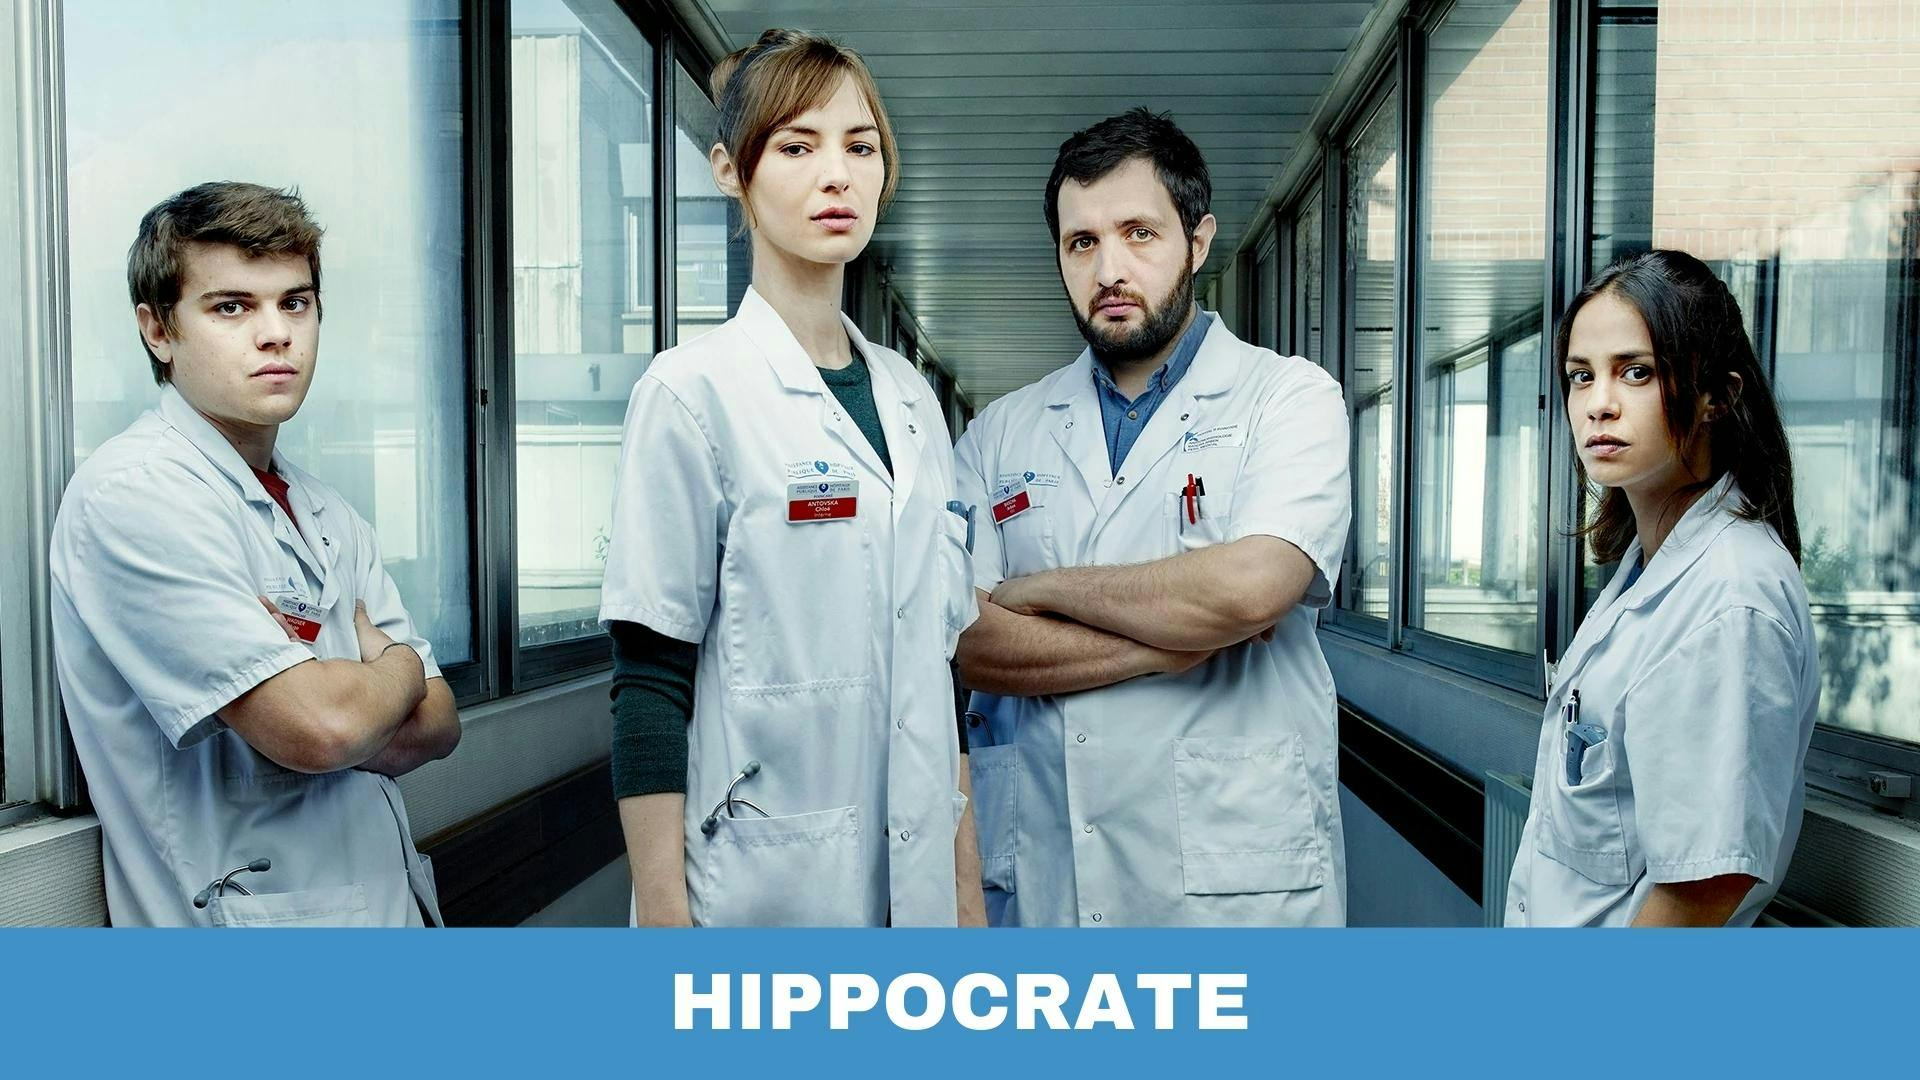 Poster des personnages de la série médicale Urgences